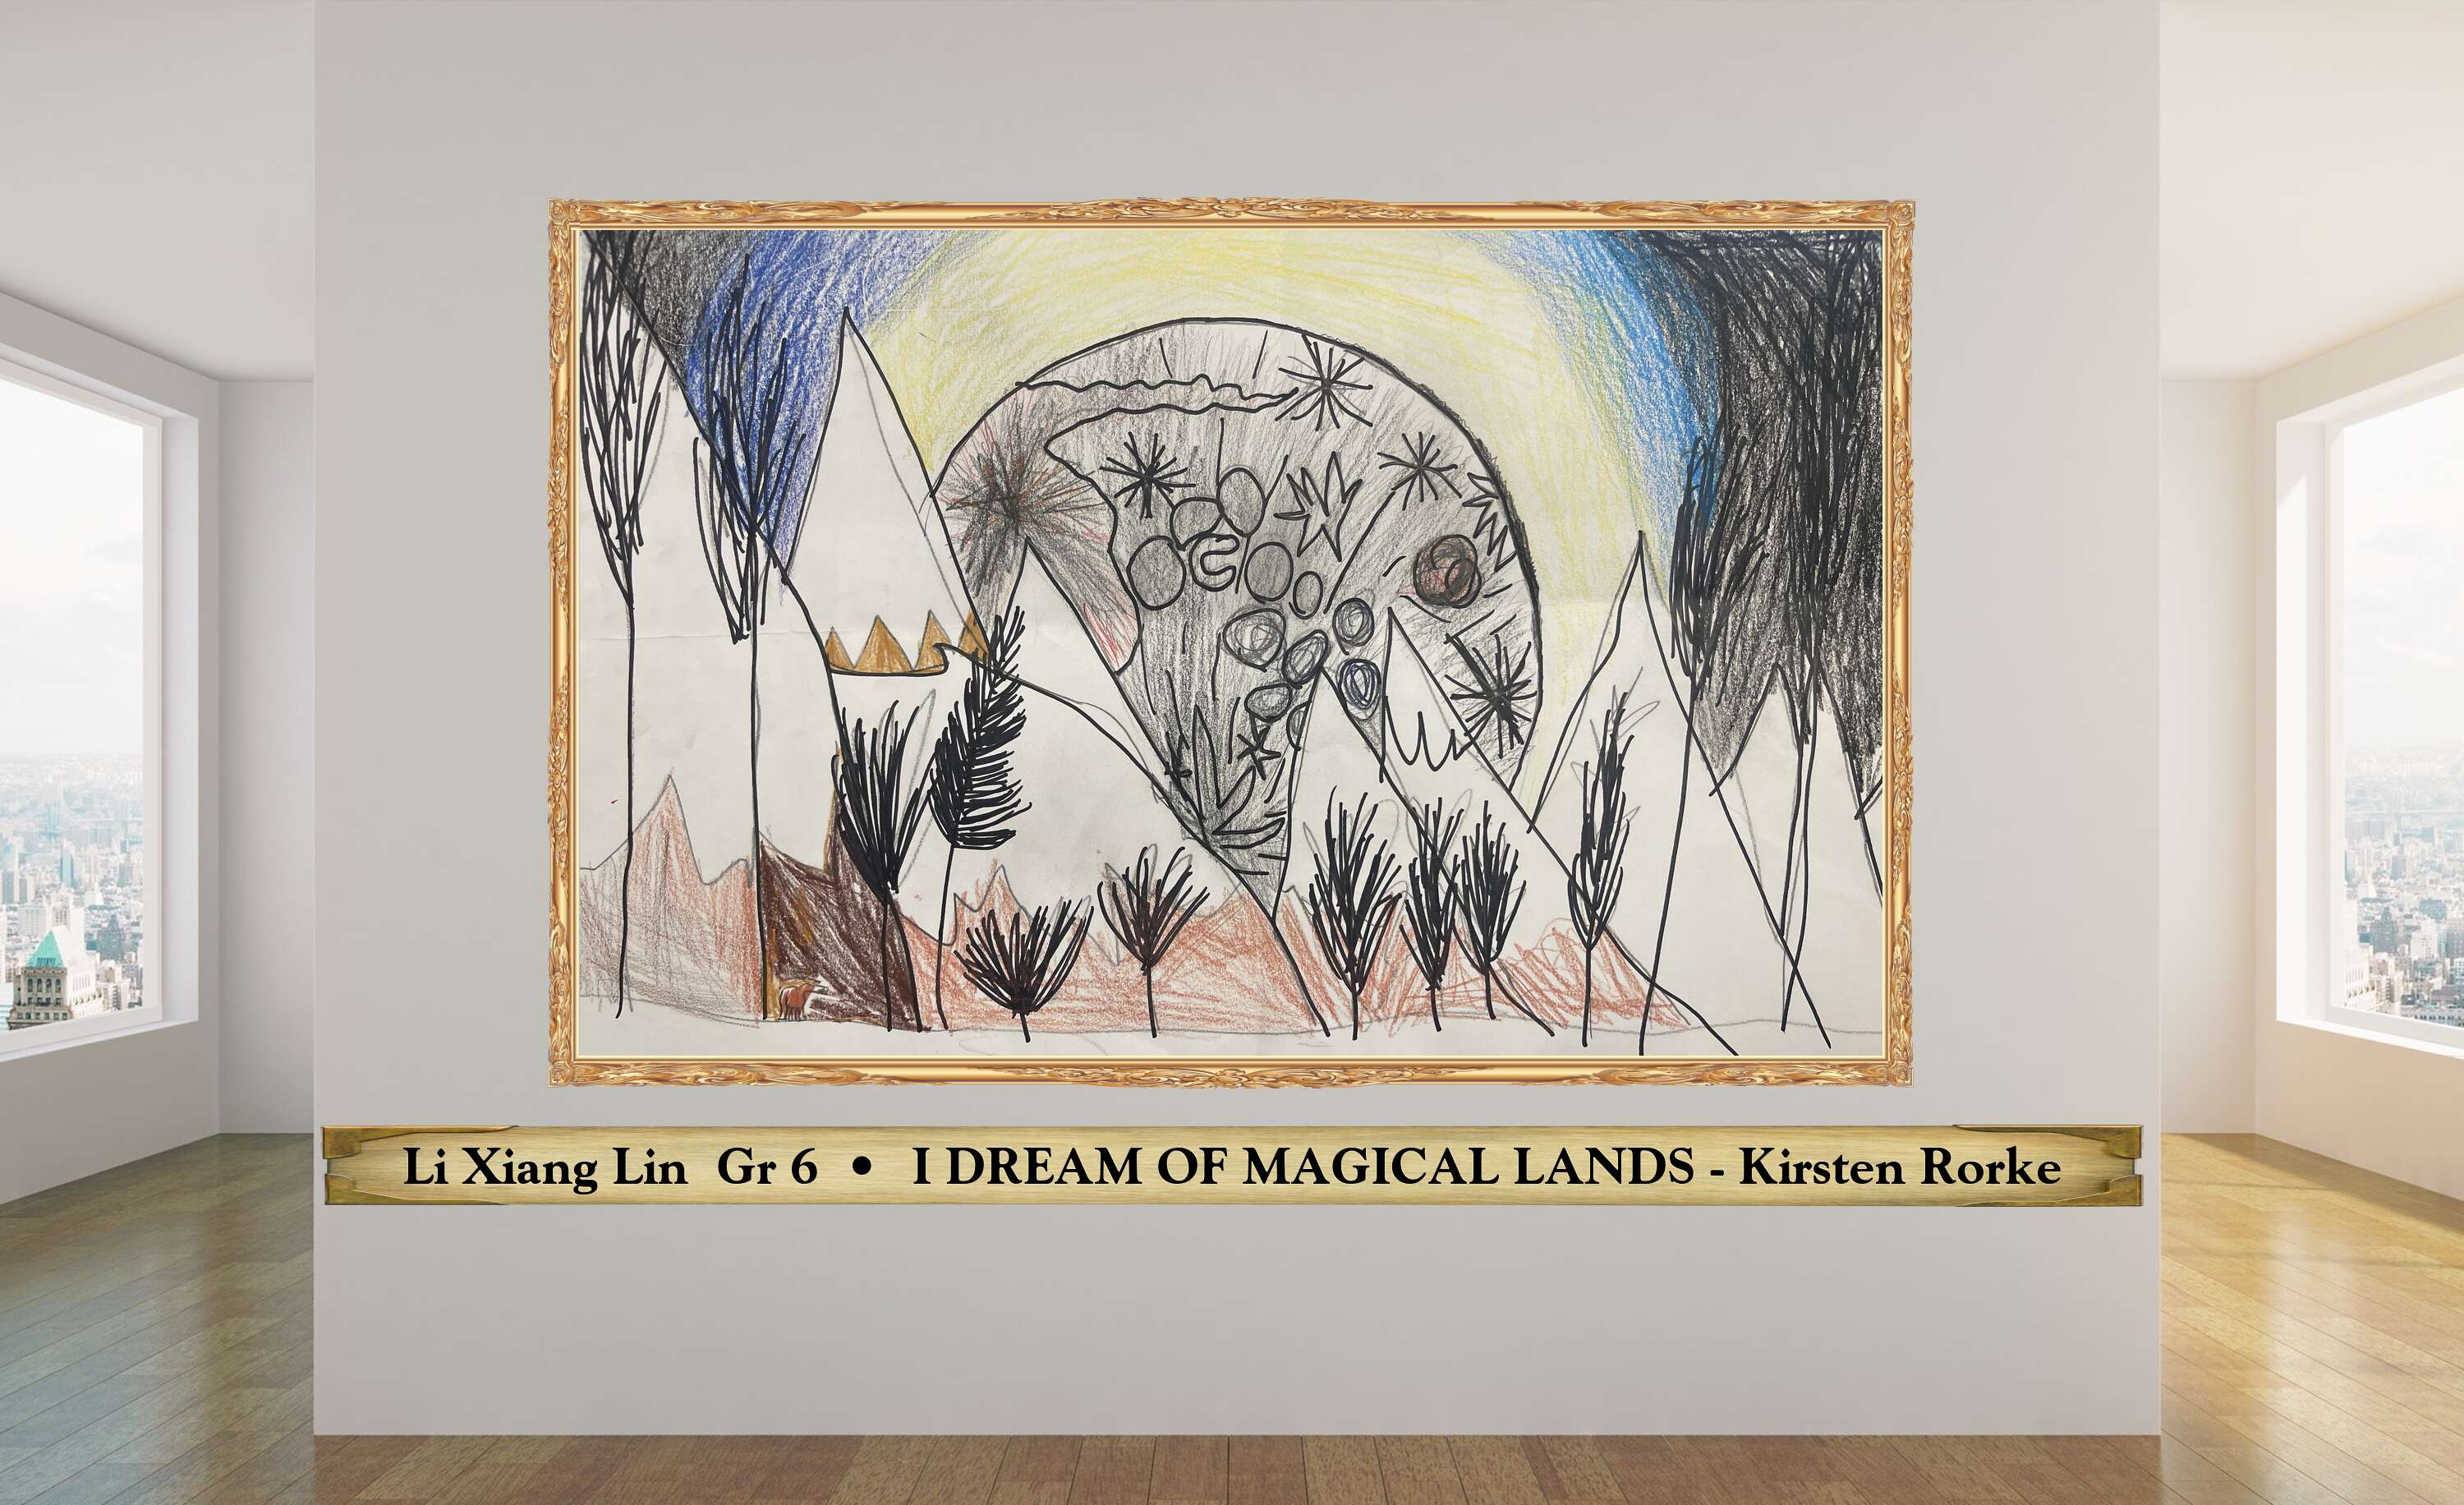 Li Xiang Lin  Gr 6  •  I DREAM OF MAGICAL LANDS - Kirsten Rorke